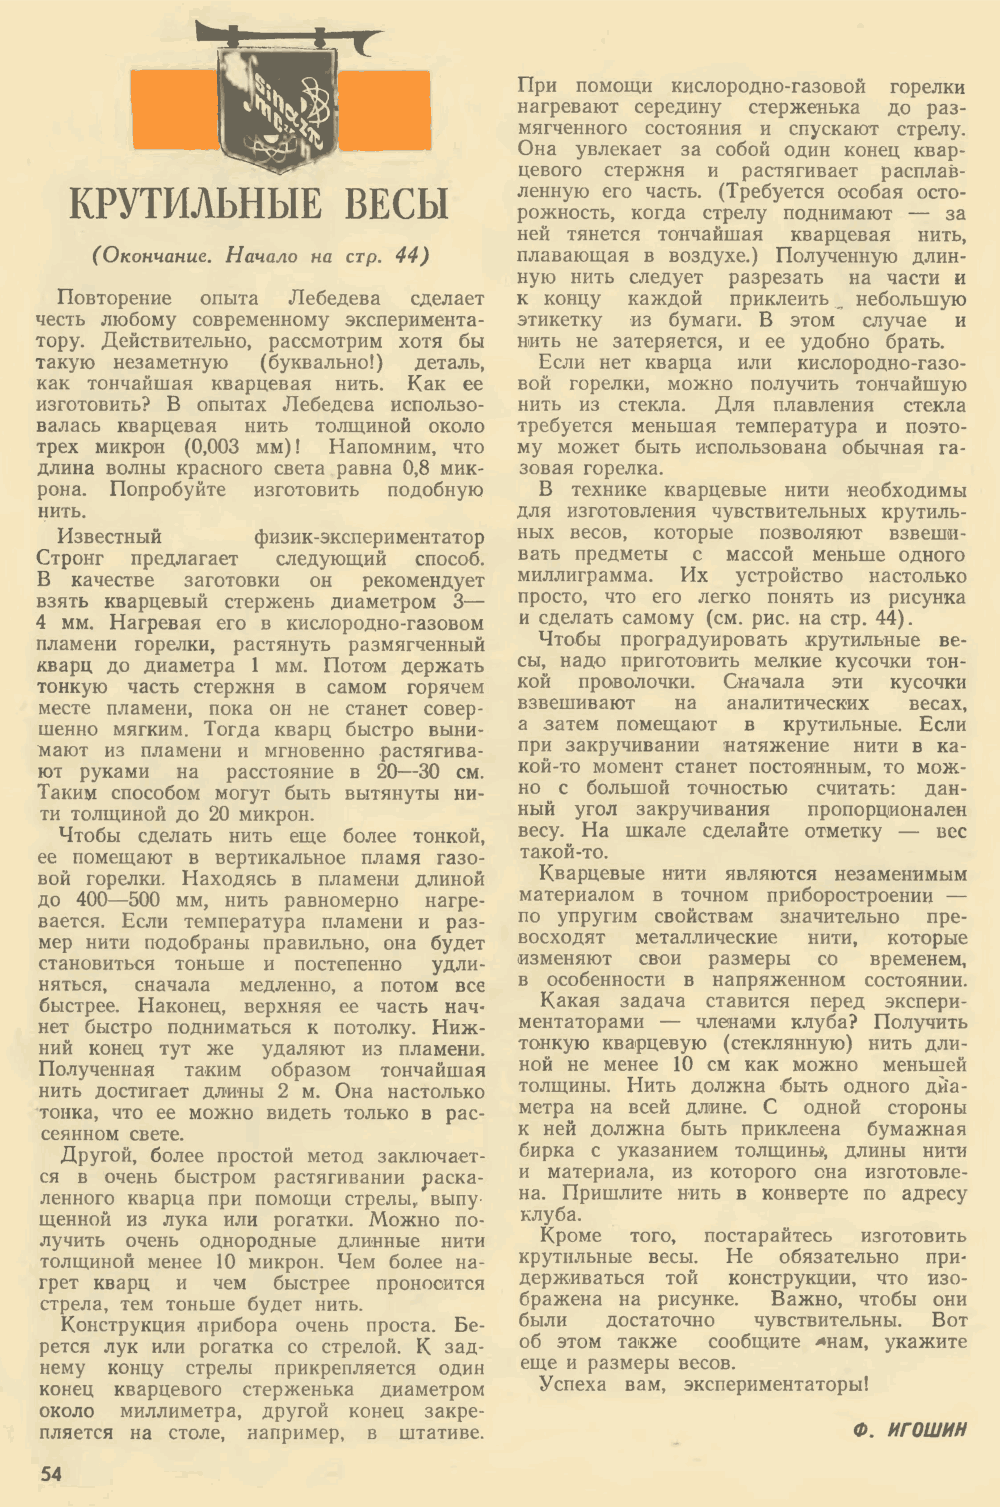 Крутильные весы. Ф. Игошин. Юный техник, 1971, №2, с.44,54. Фотокопия №2